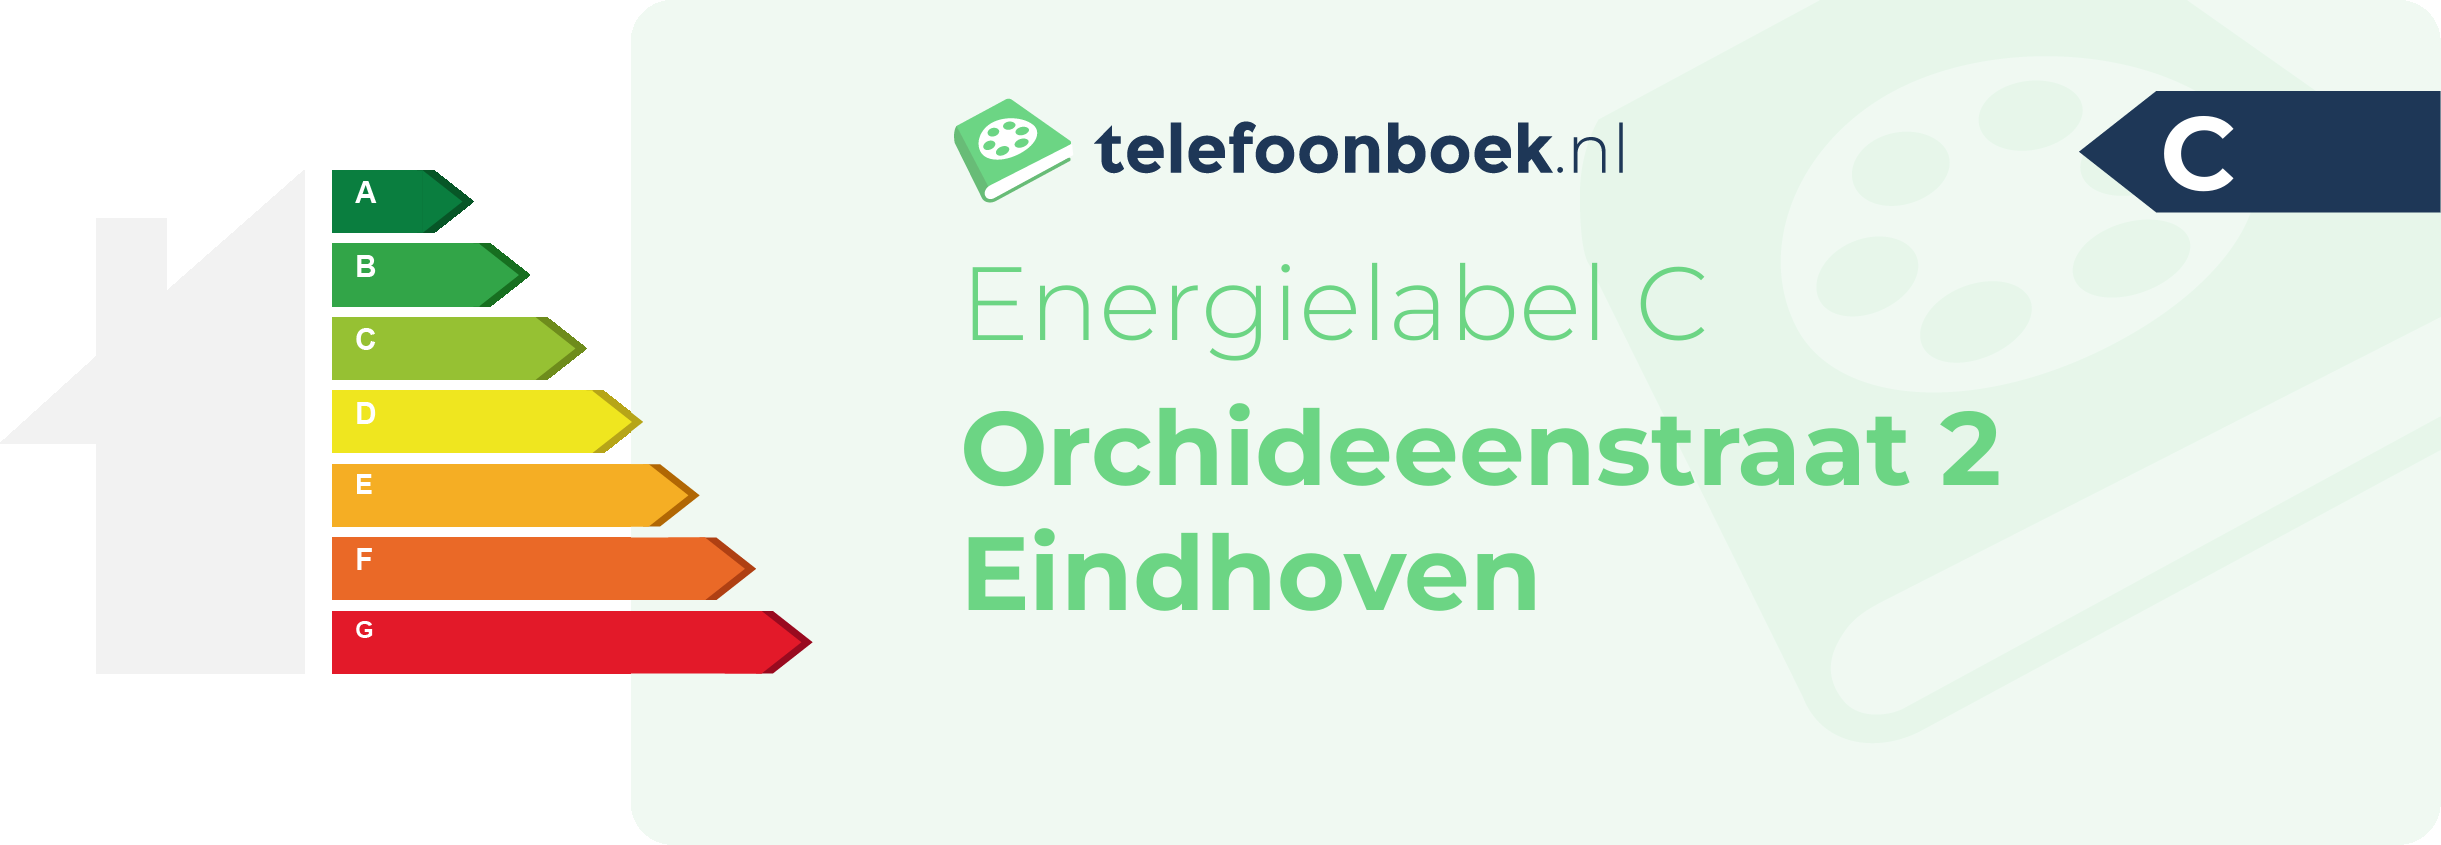 Energielabel Orchideeenstraat 2 Eindhoven